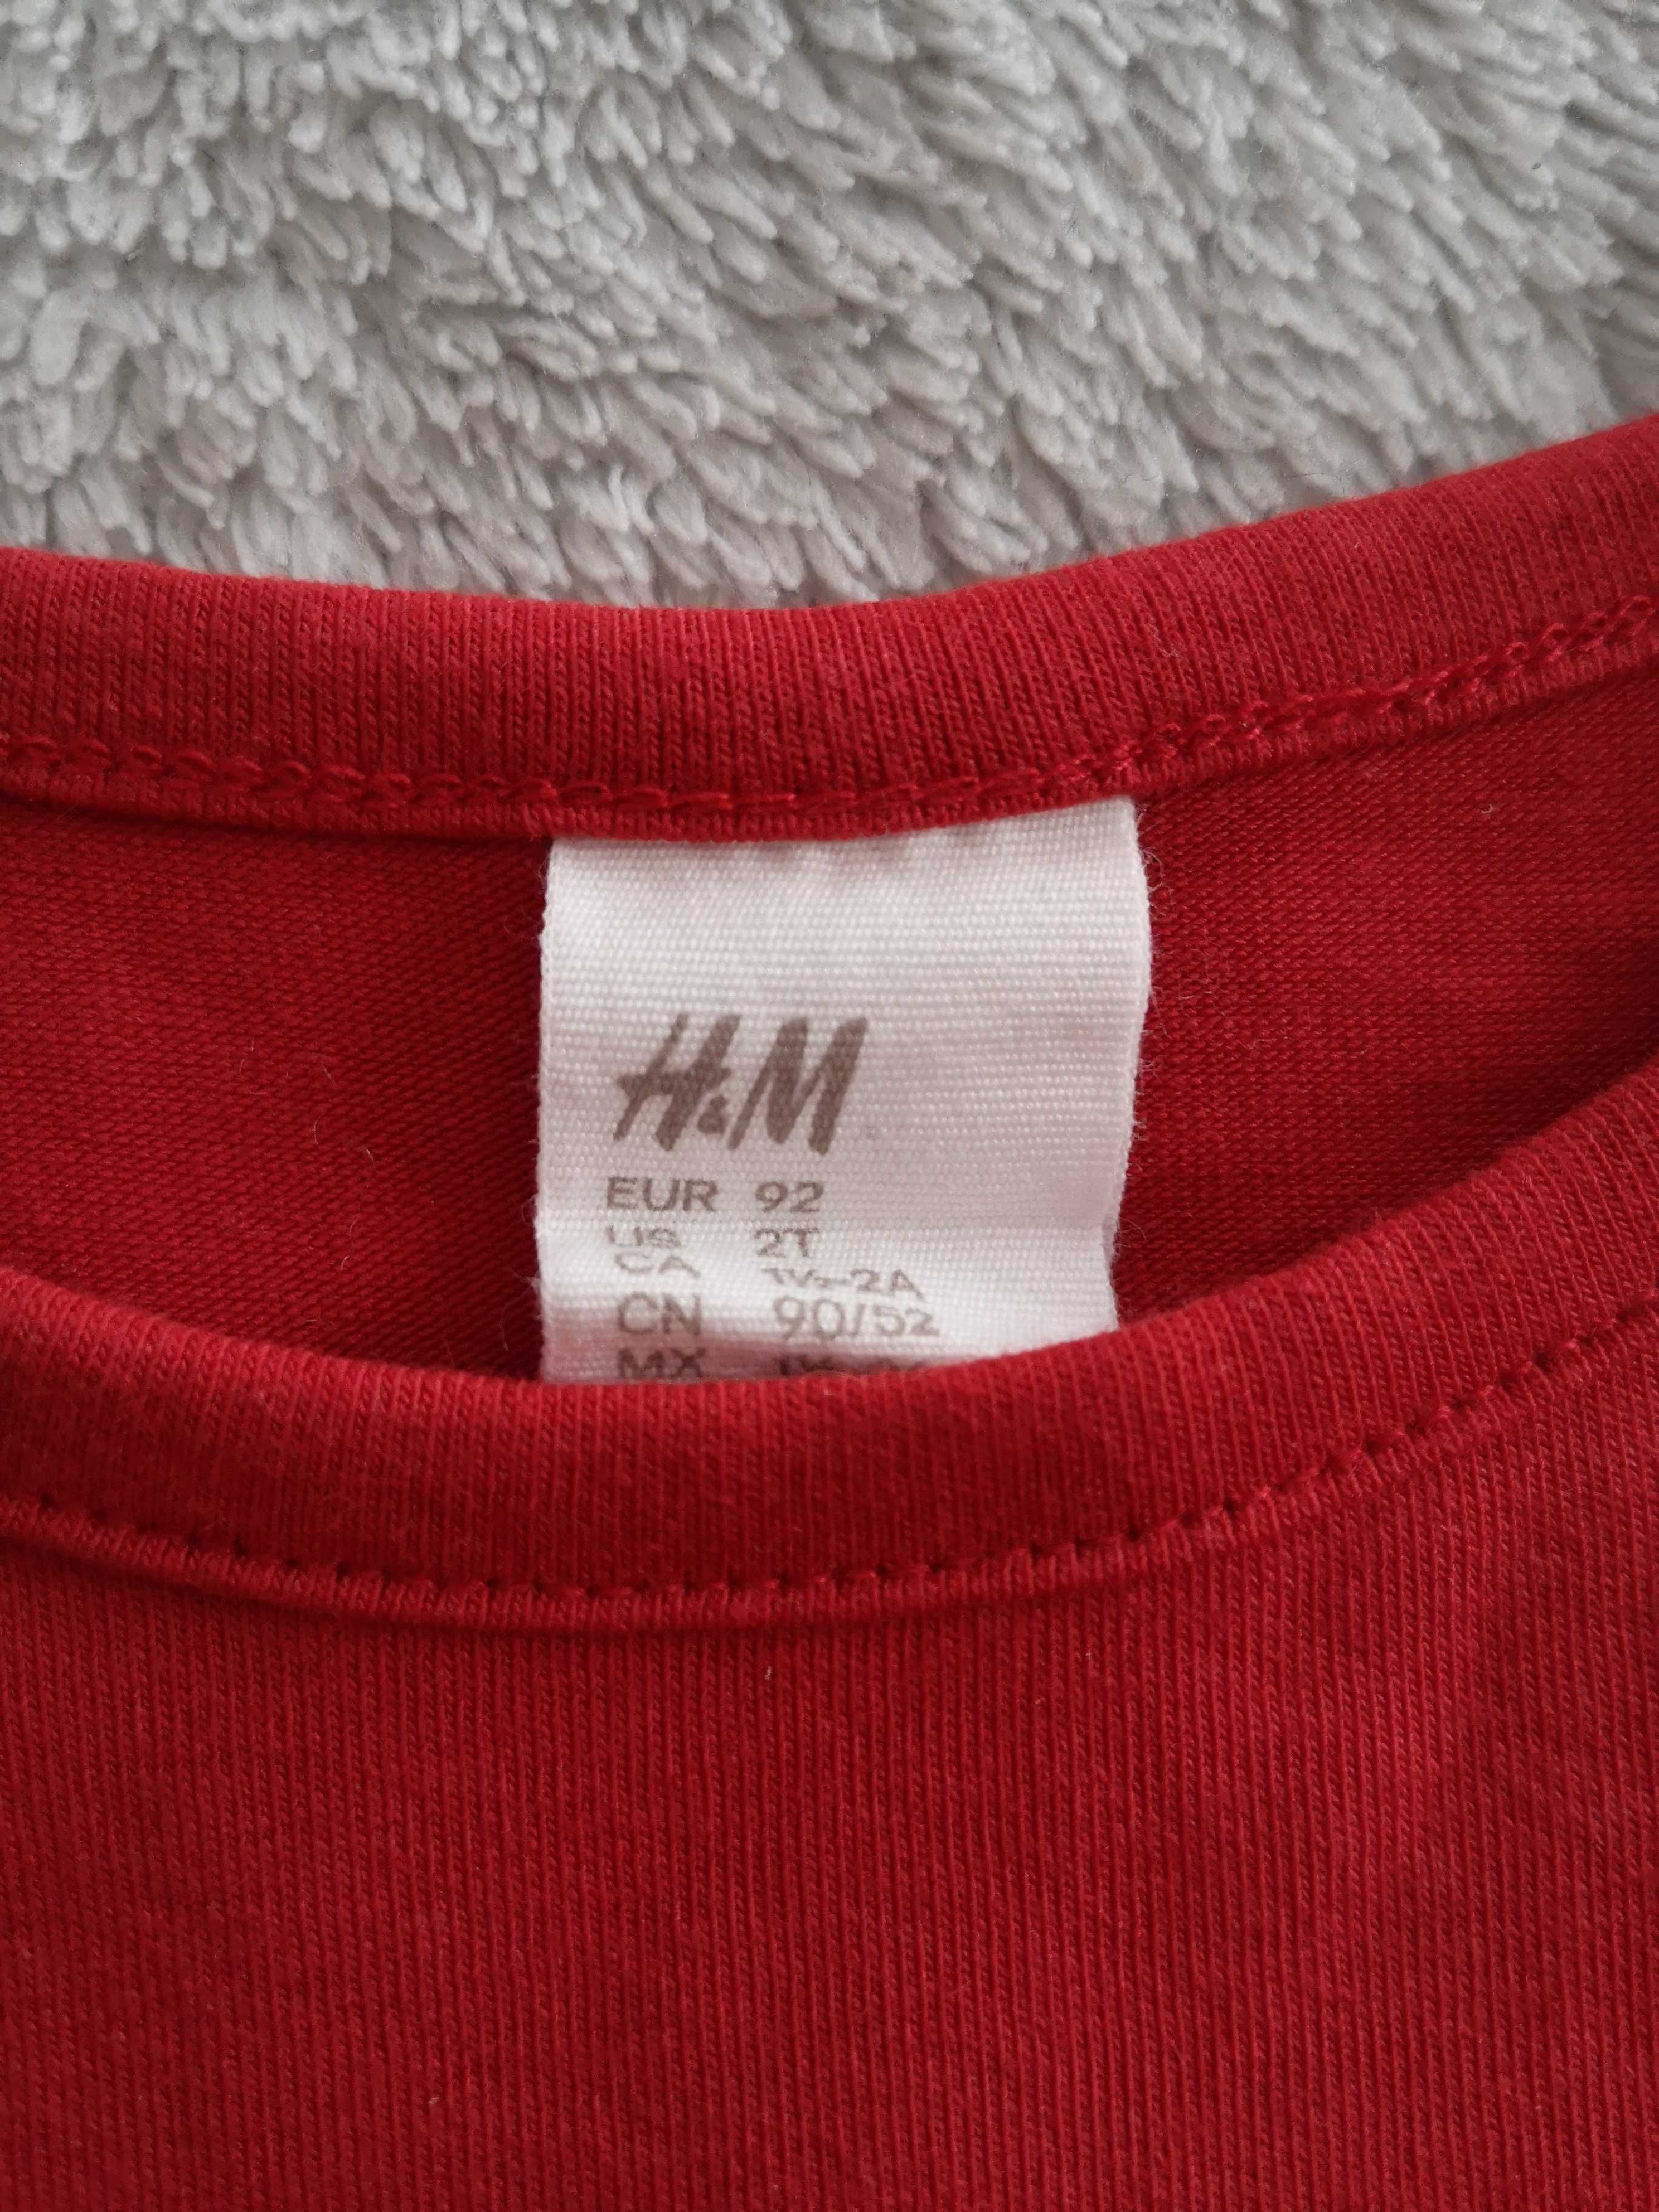 Czerwona elegancka tiulowa brokatowa sukienka H&M 92 jak nowa